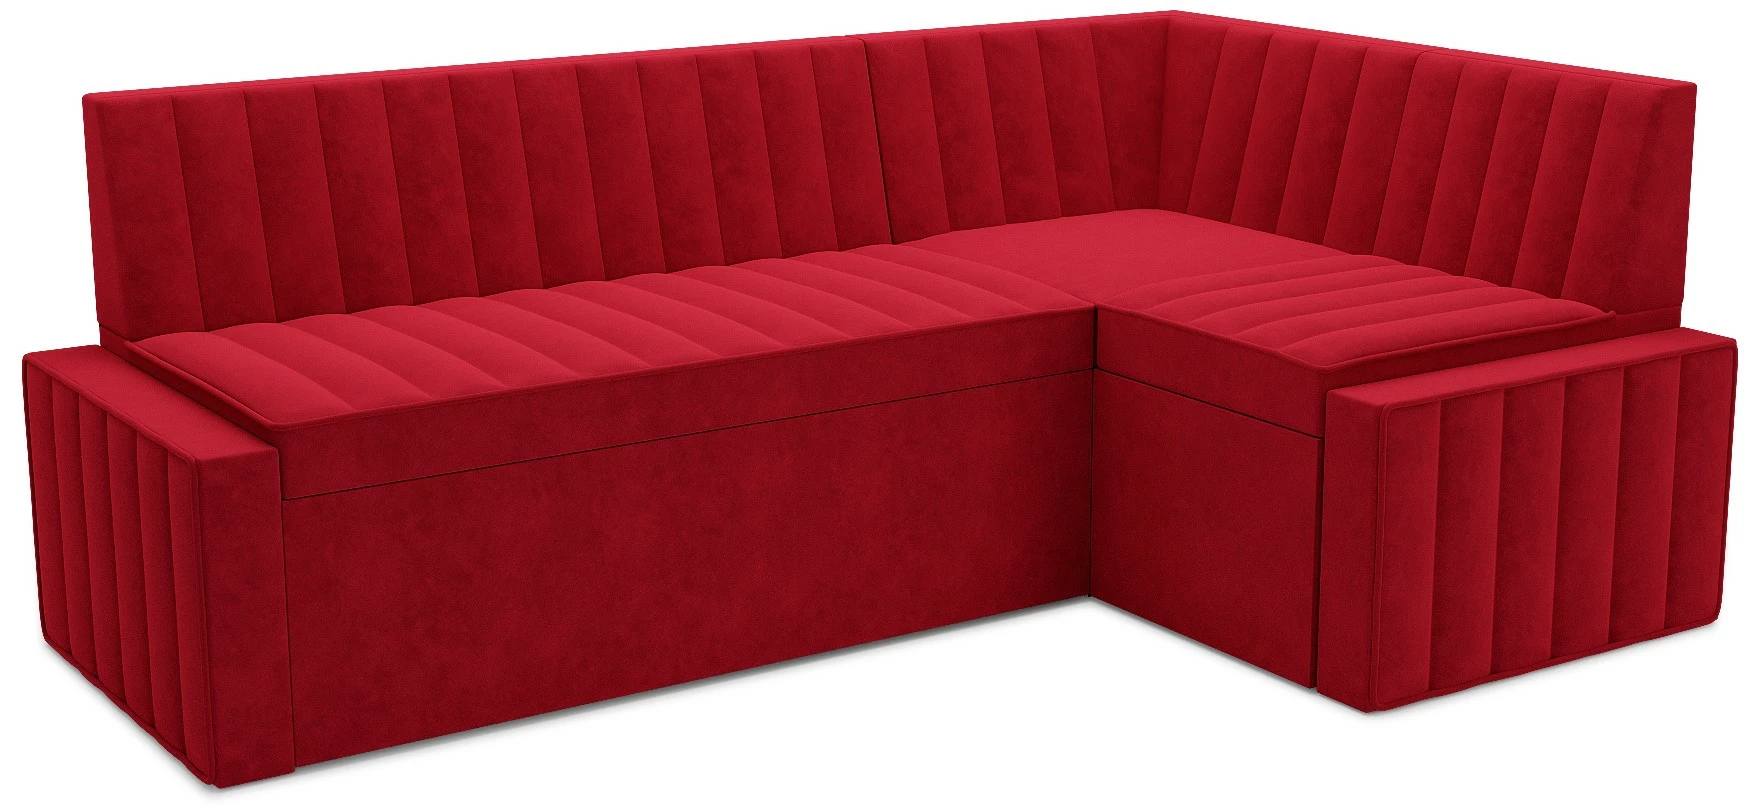 Угловой красный кухонный диван